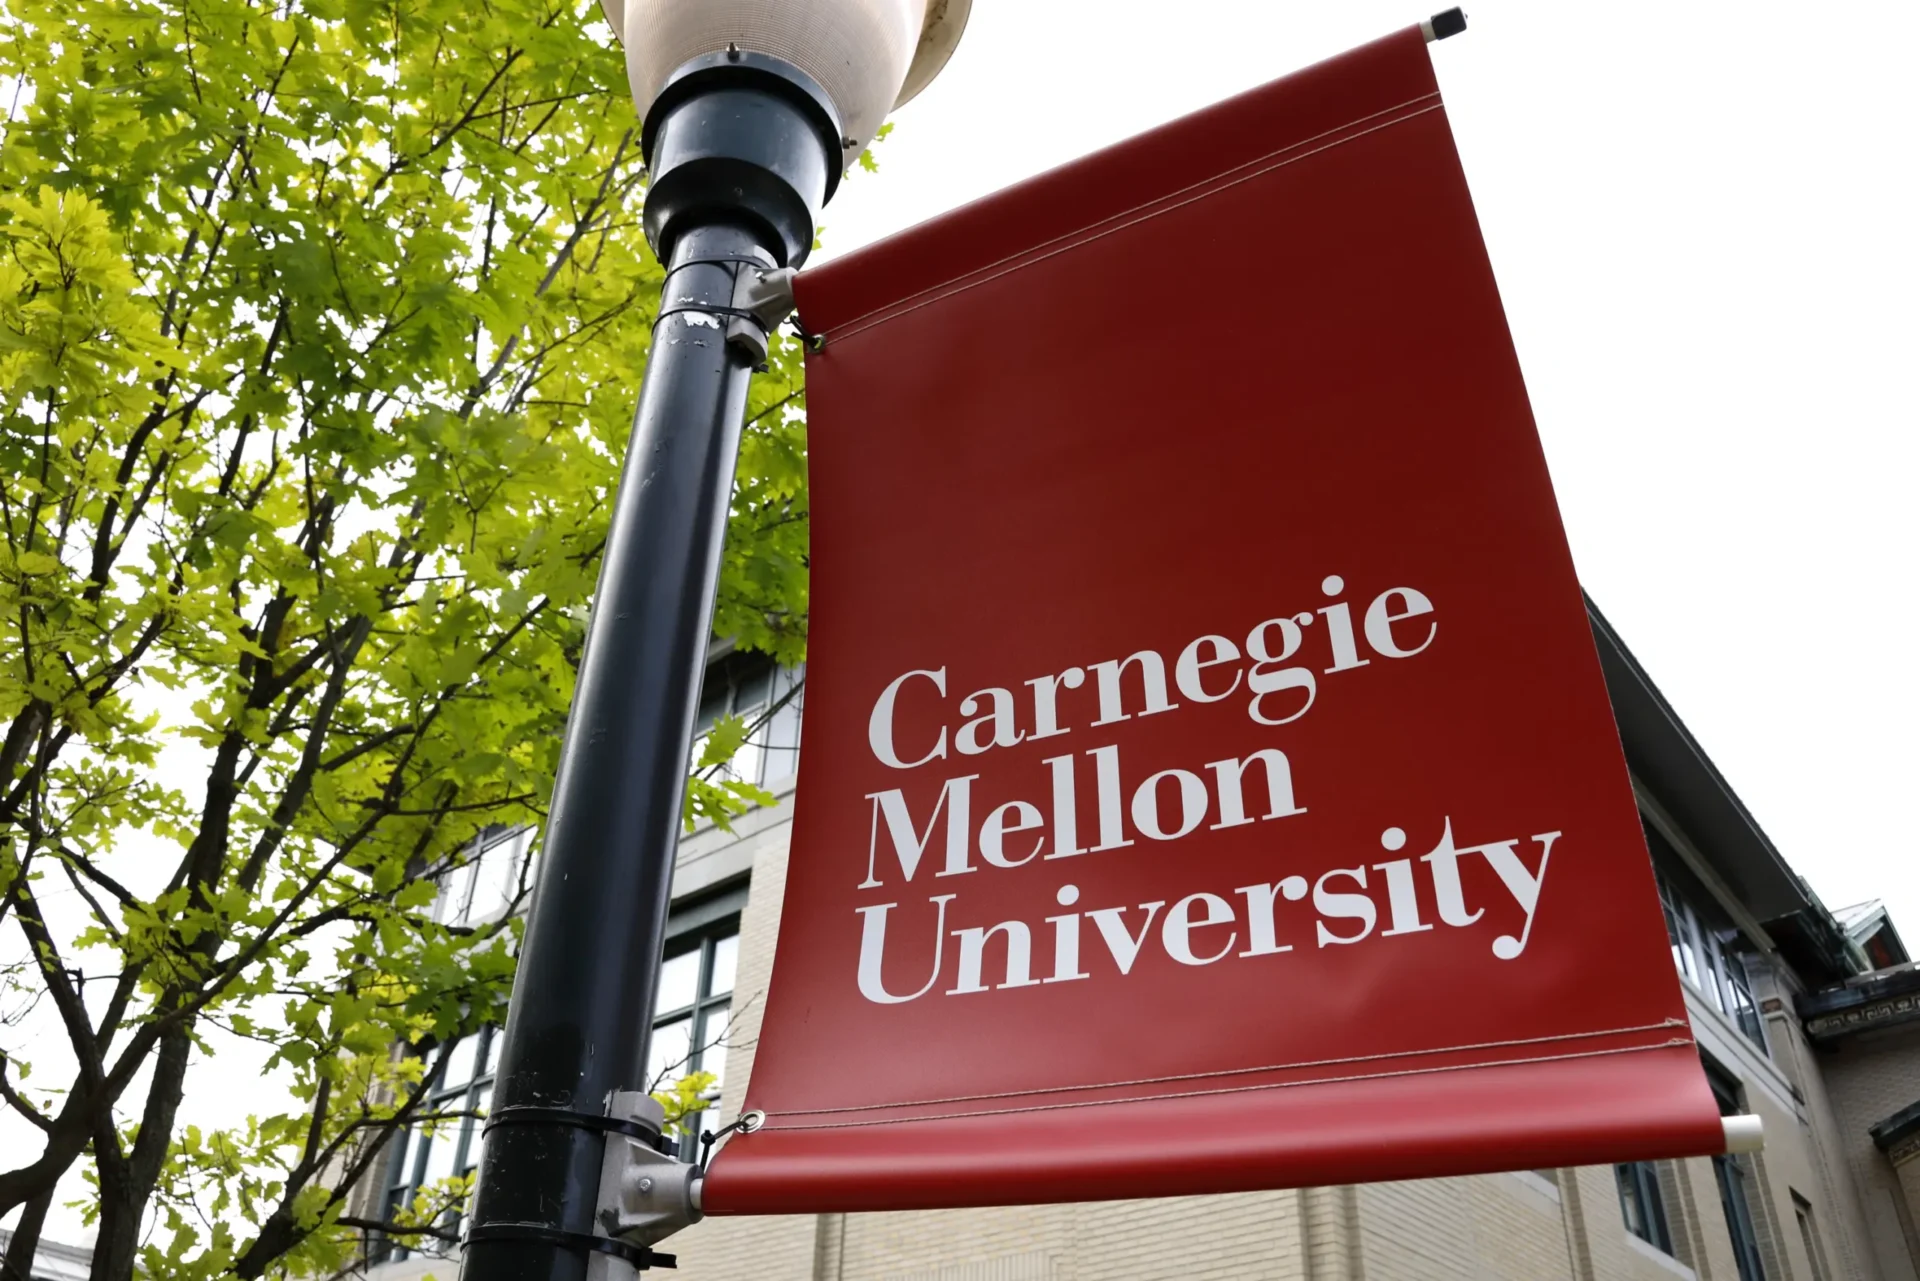 La Fundación Rales apuesta fuerte por los estudiantes STEM de Carnegie Mellon